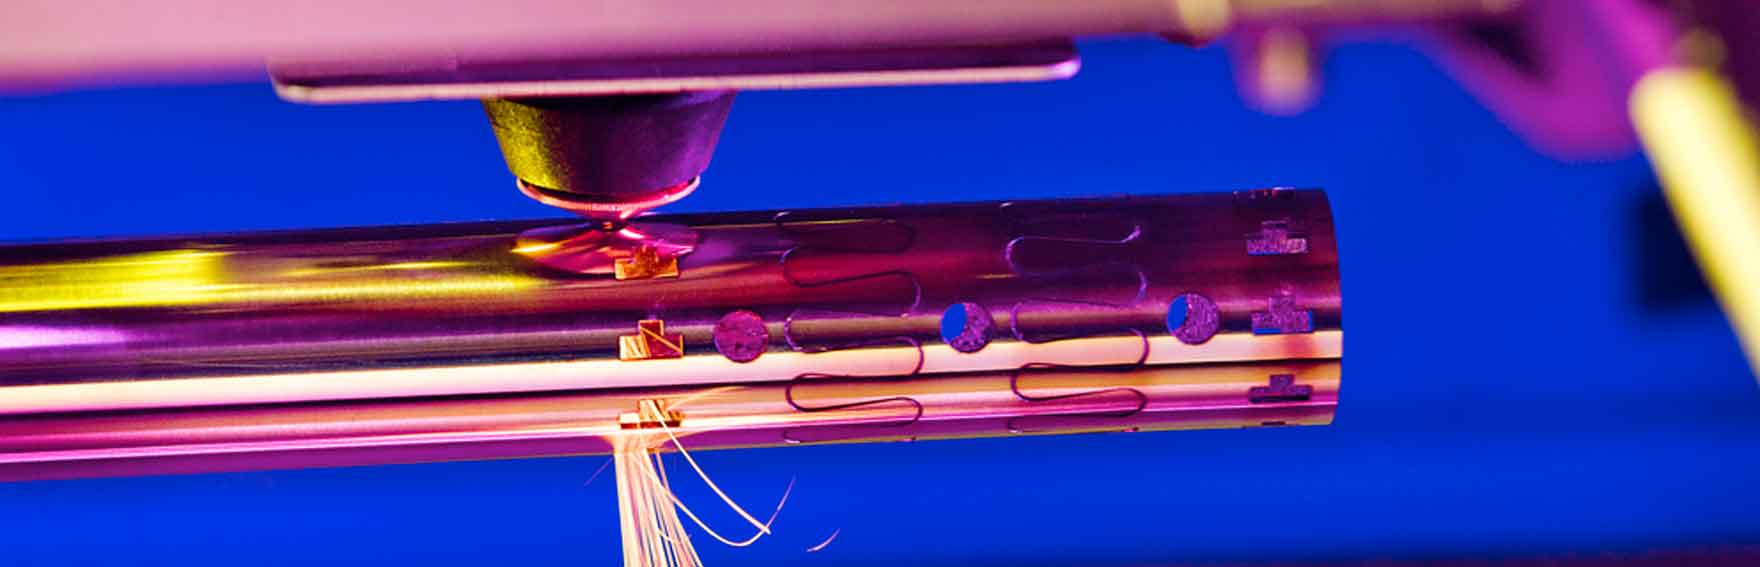 Fiber laser tube